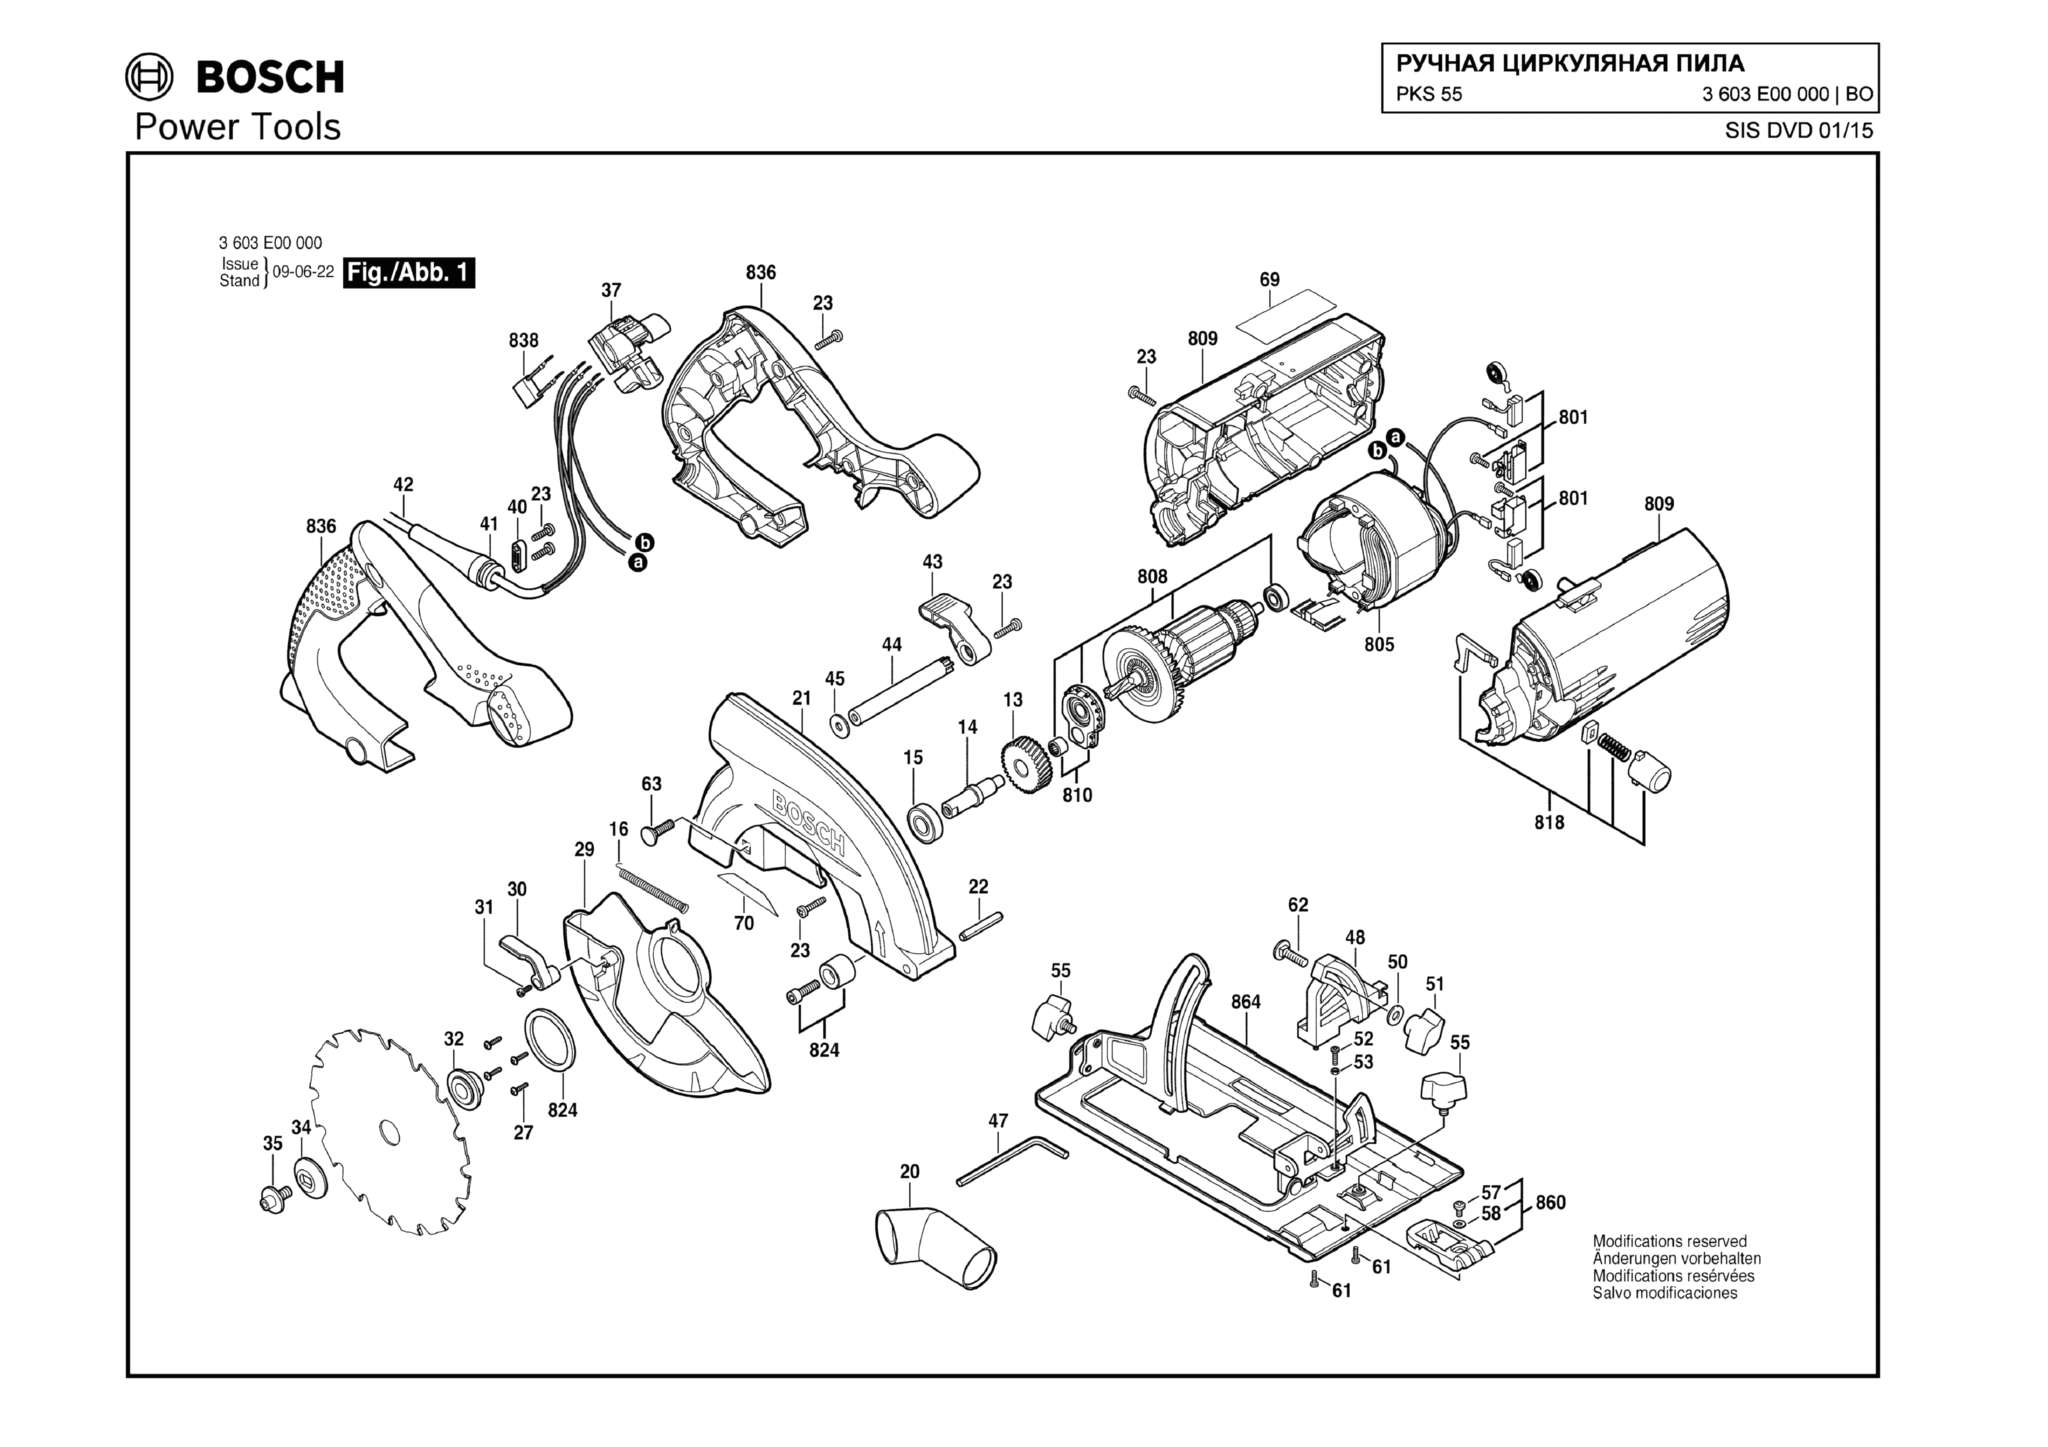 Запчасти, схема и деталировка Bosch PKS 55 (ТИП 3603E00000)